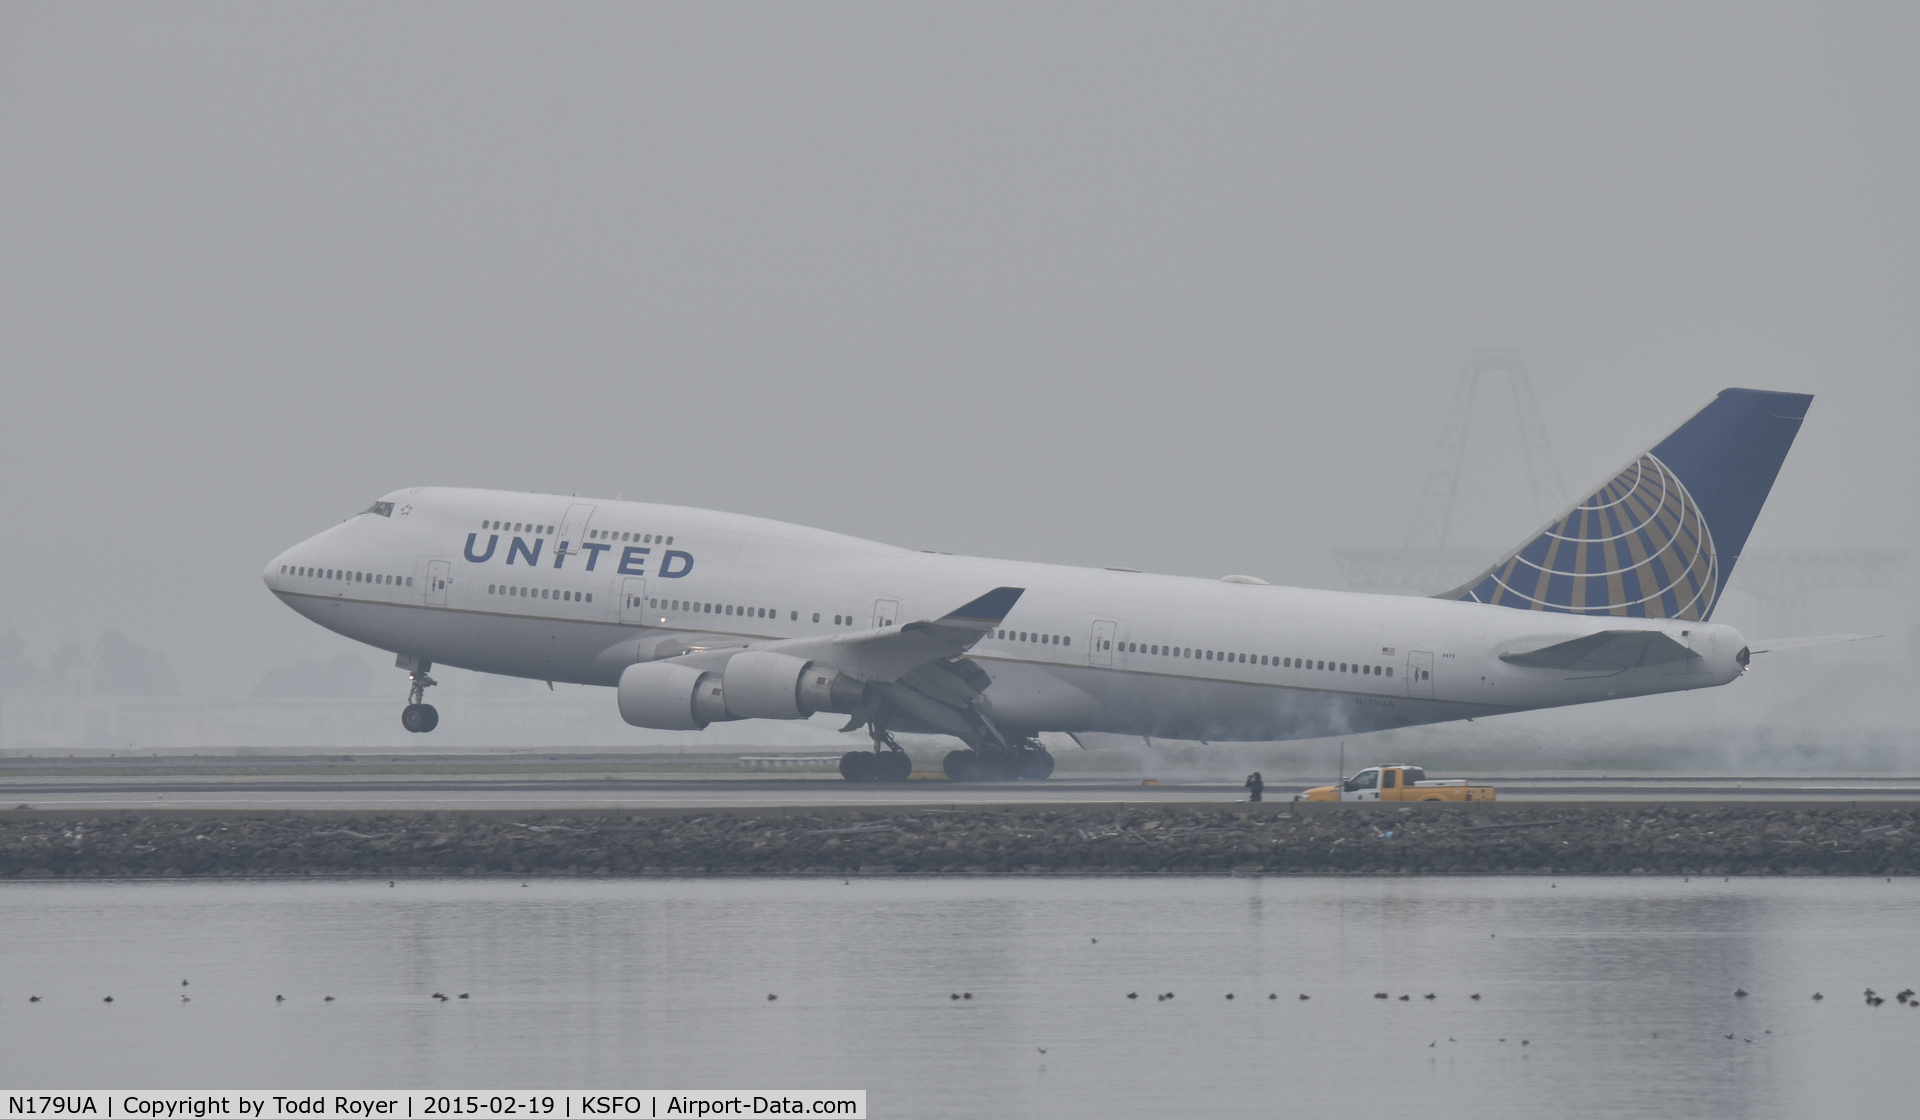 N179UA, 1991 Boeing 747-422 C/N 25158, Landing at SFO on a foggy morning